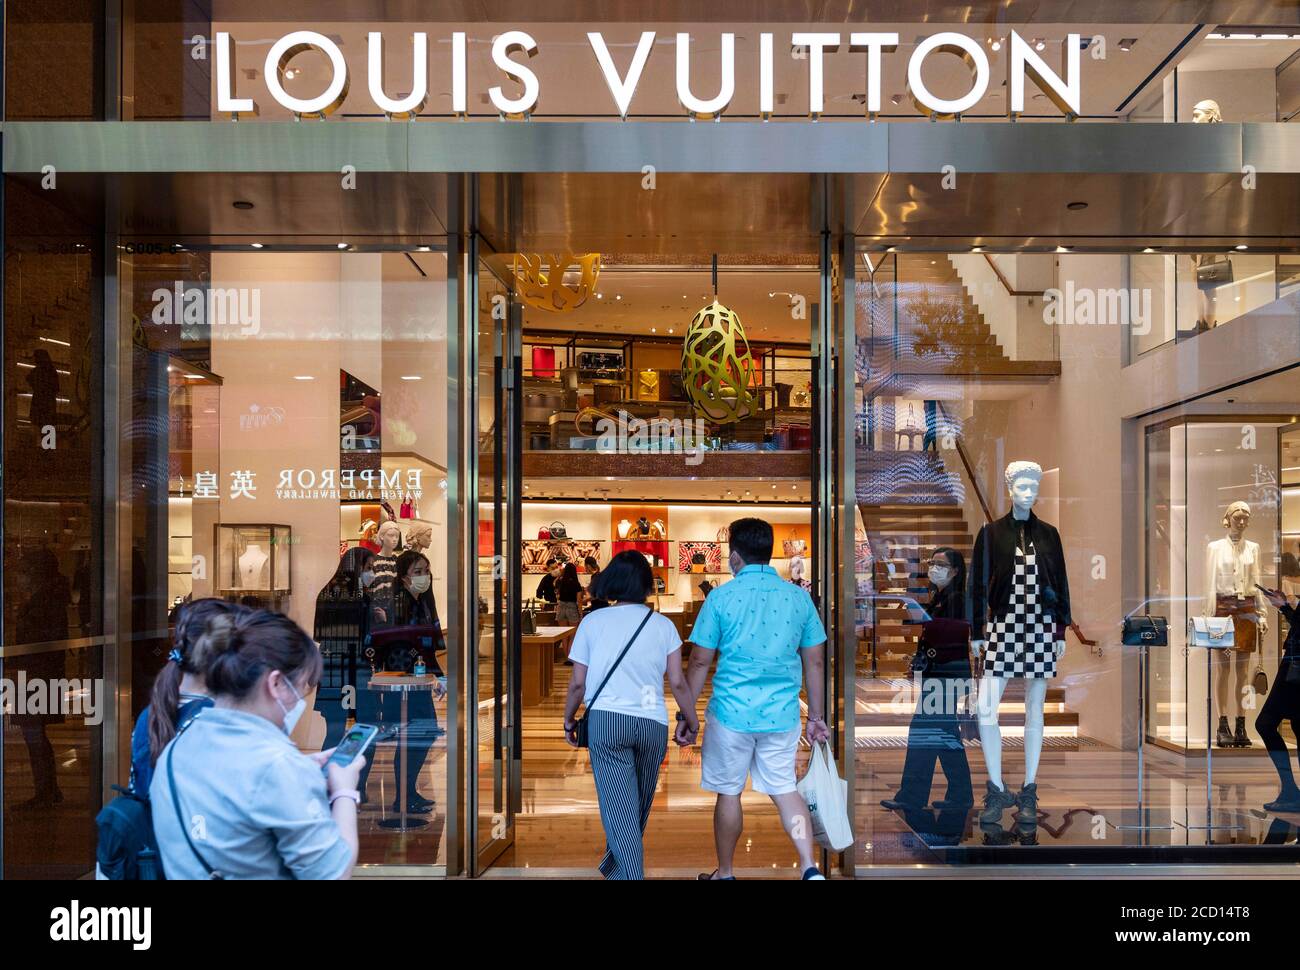 Louis Vuitton Shop Stock Photo - Download Image Now - Auckland